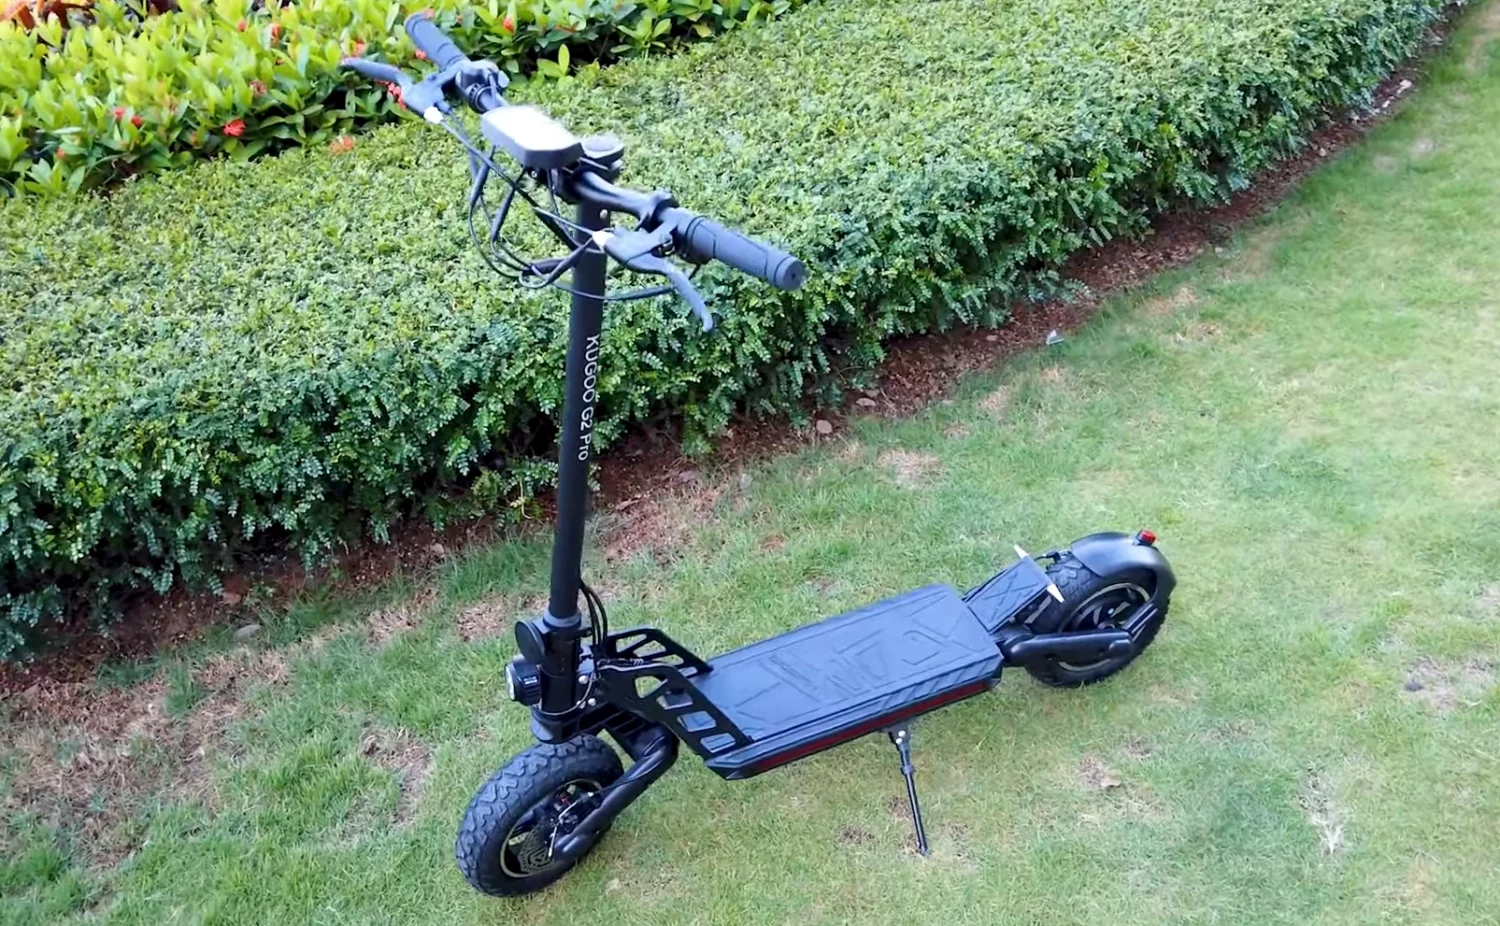 Kugoo G2 Pro e scooter